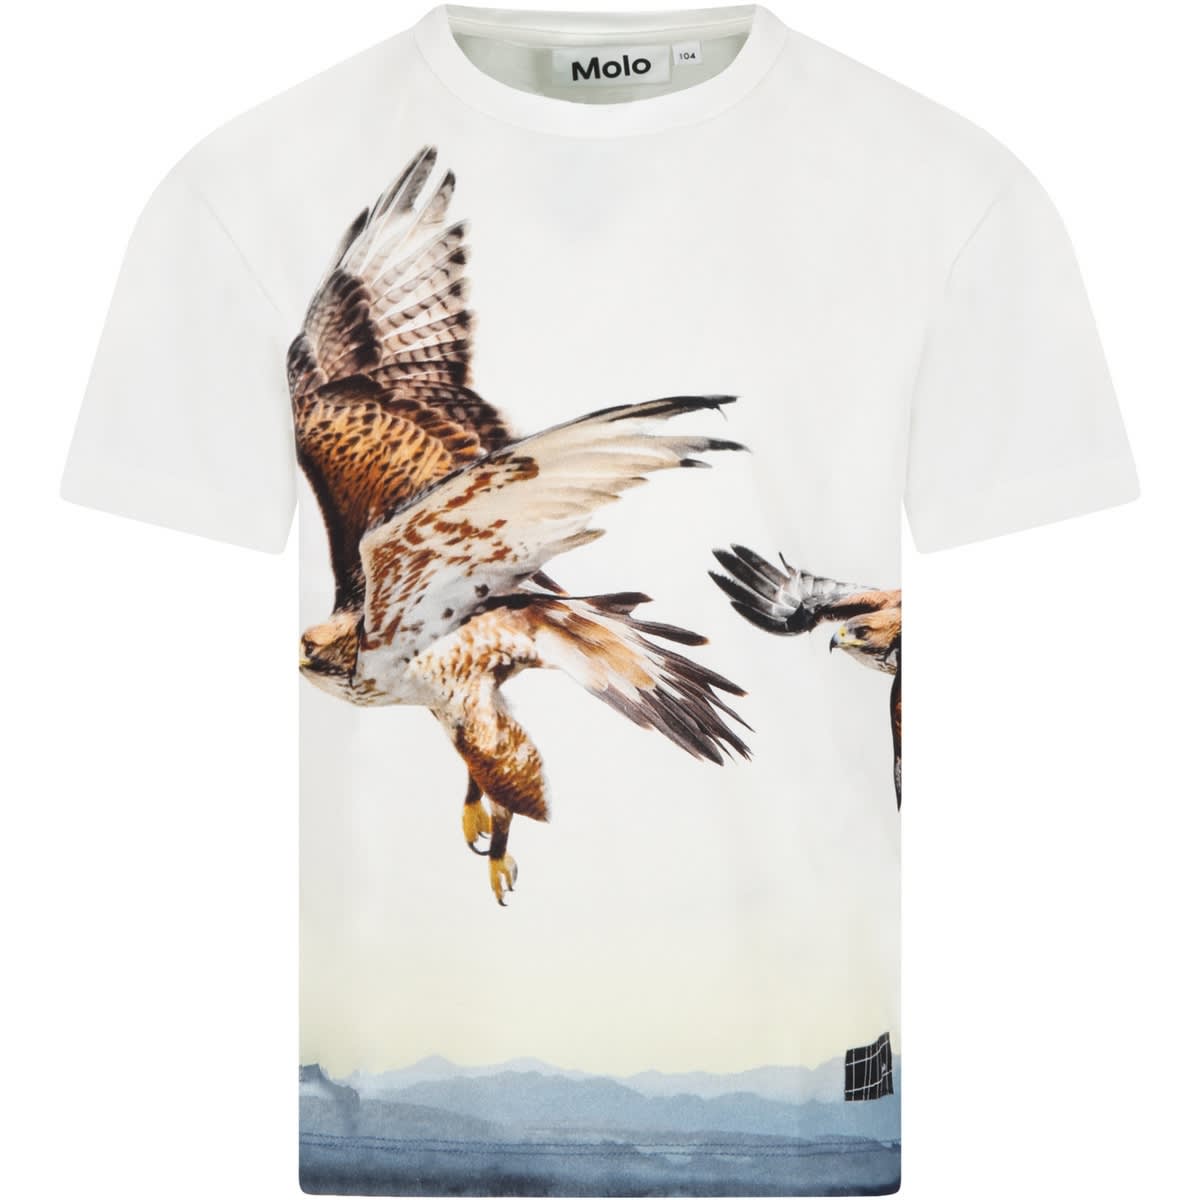 Molo White raveno T-shirt For Boy With Eagles